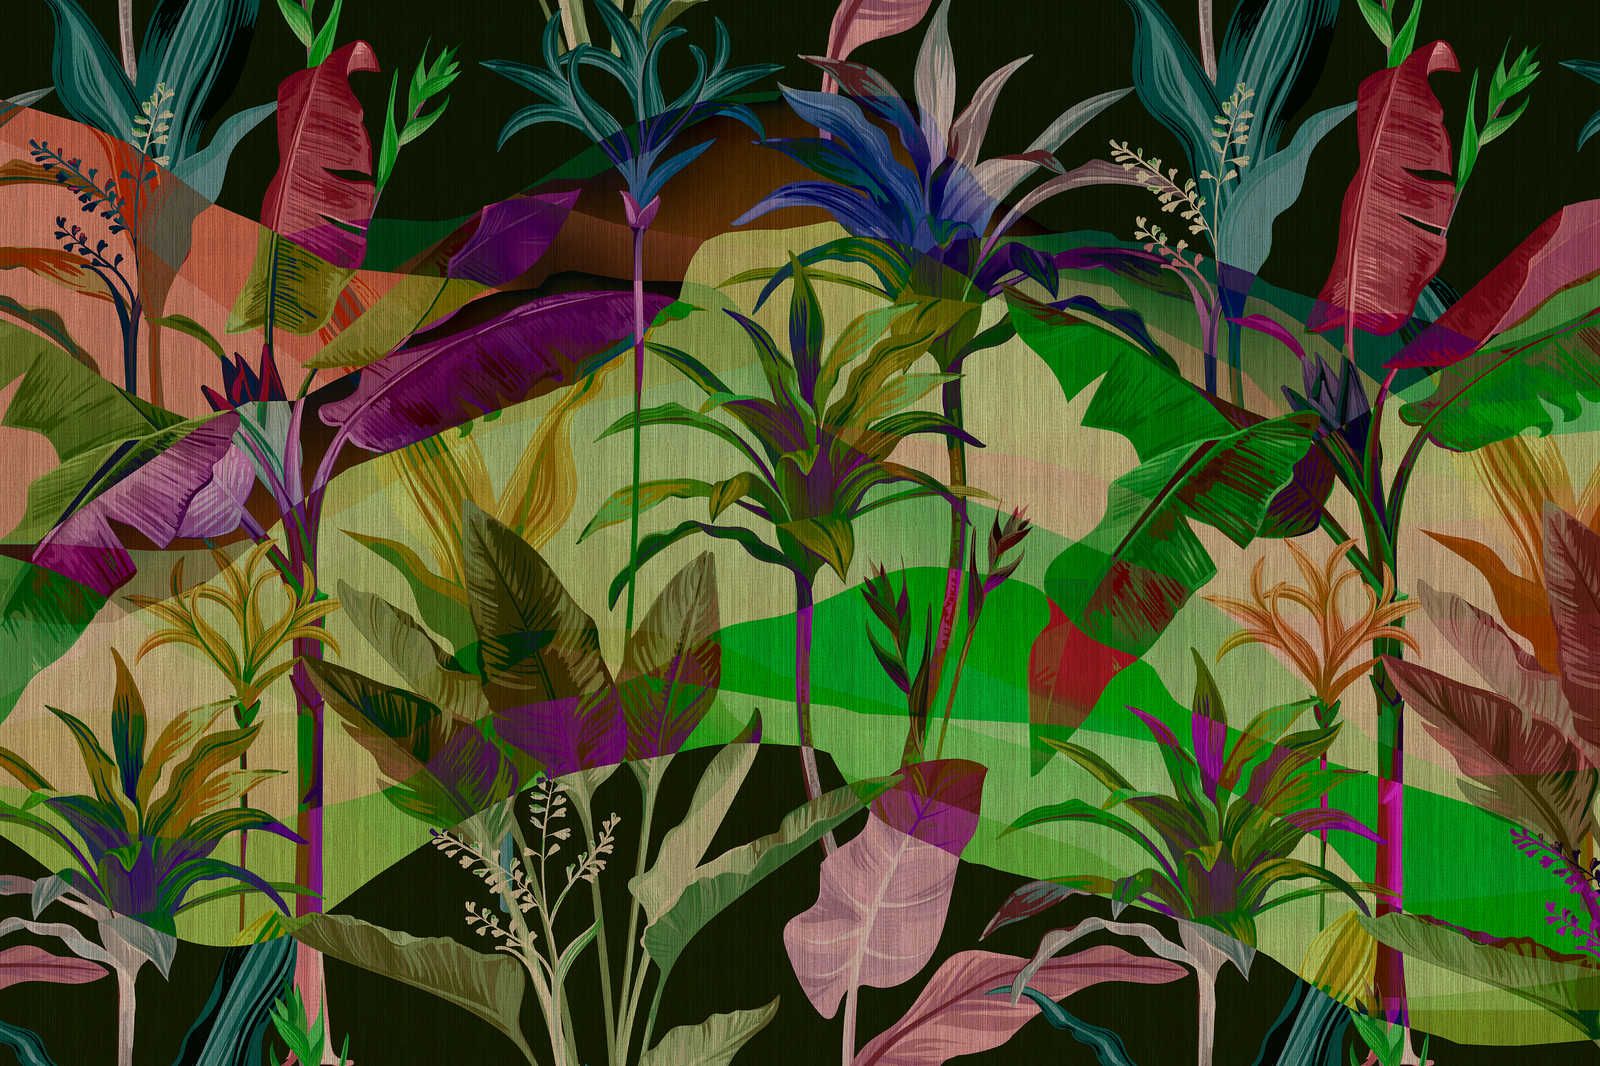             Palmyra 2 - Canvas schilderij Jungle bladeren kleurrijk ontwerp - 0,90 m x 0,60 m
        